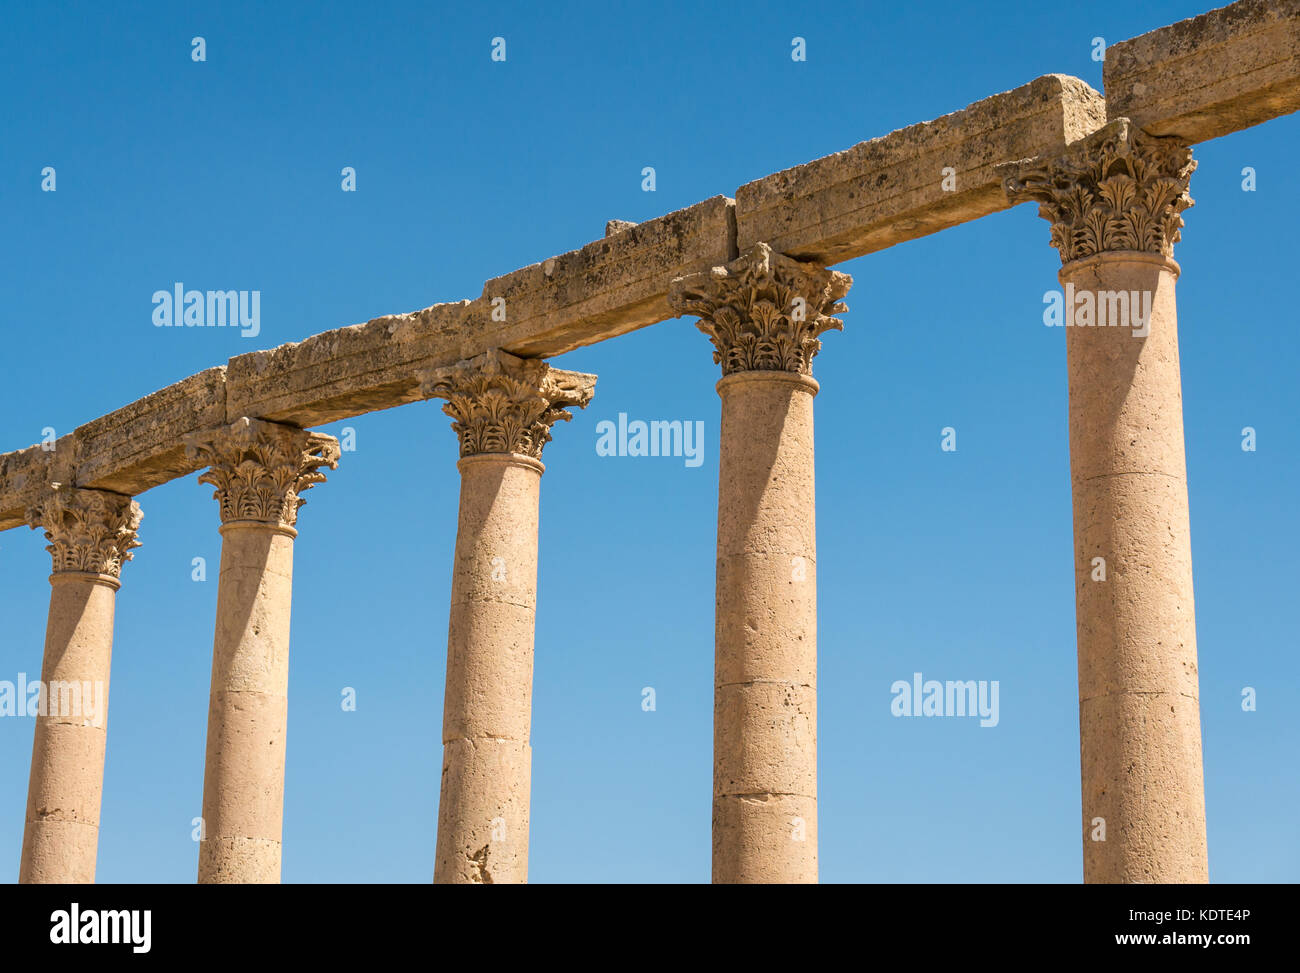 Colonne corinzie lungo il Cardo con foglie di acanto decorazione, città romana di Jerash, antica Gerasa, sito archeologico della Giordania, Medio Oriente Foto Stock